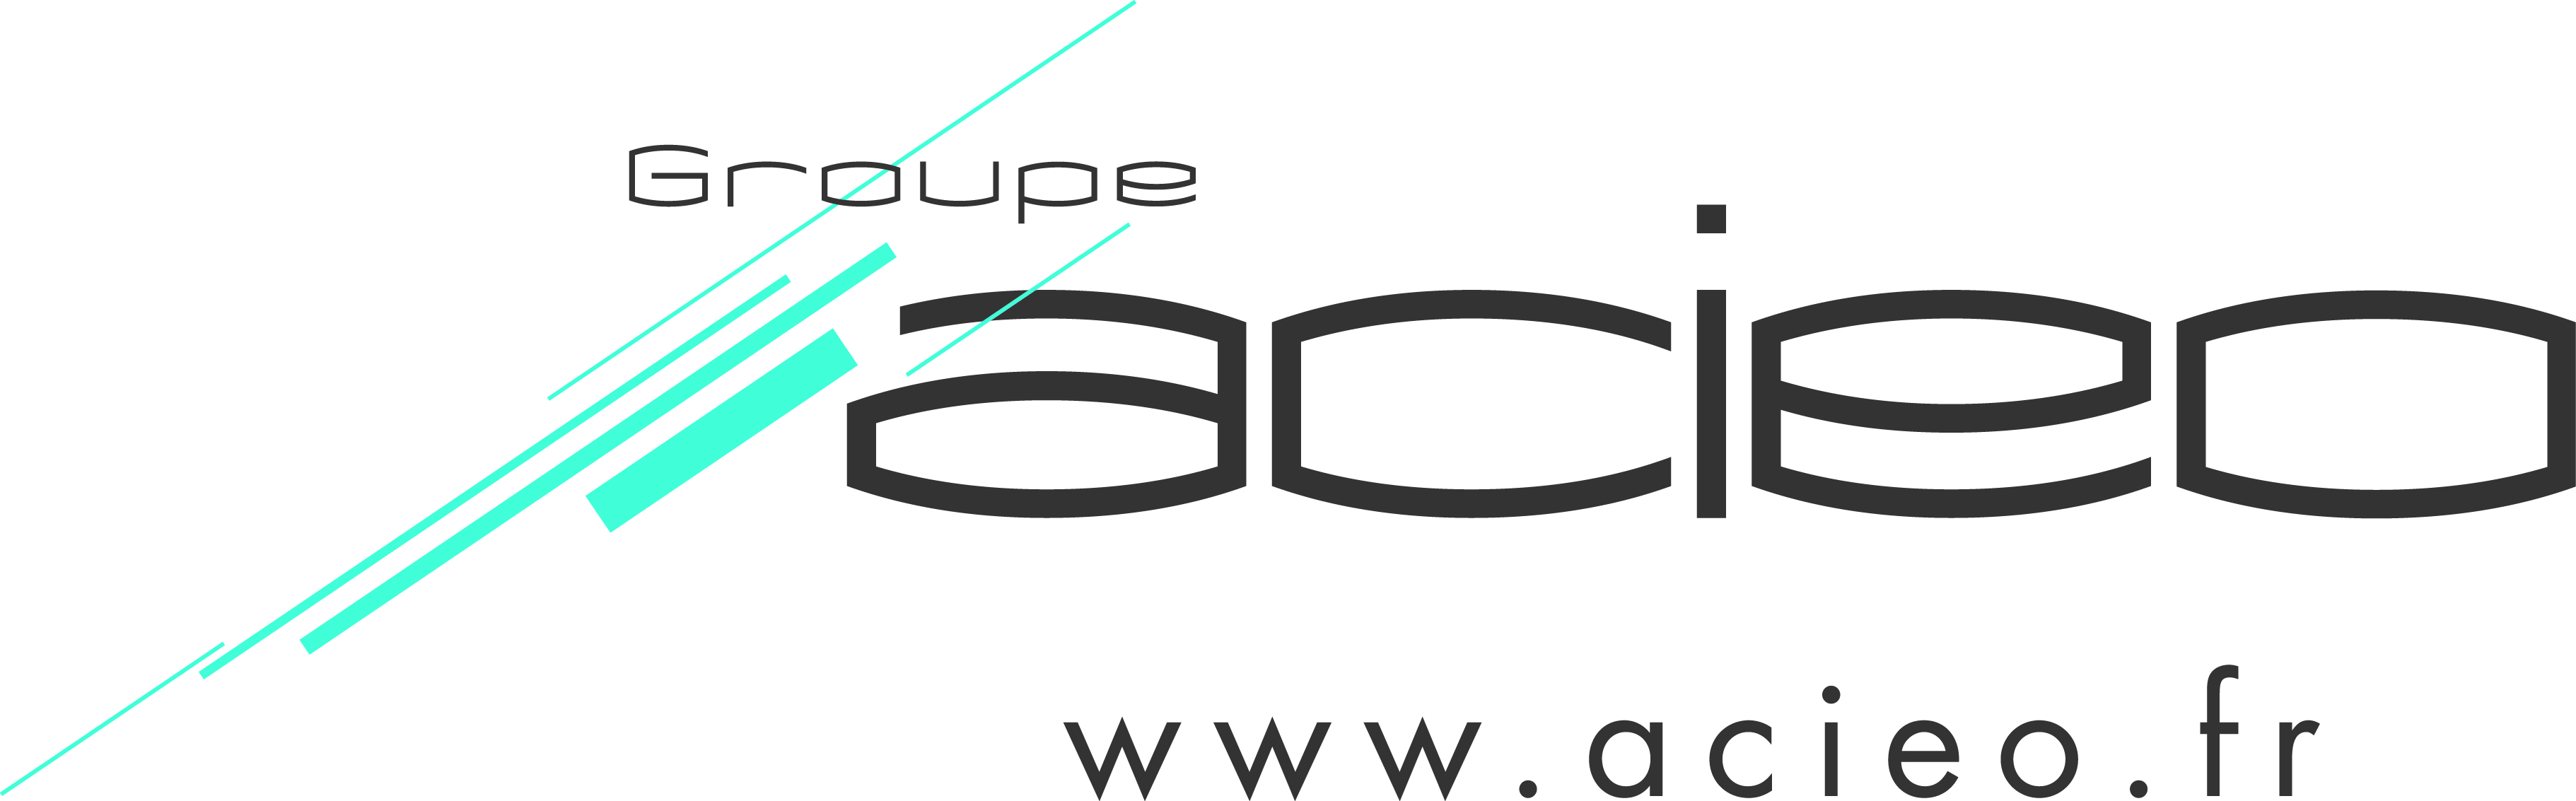 www.acieo.fr